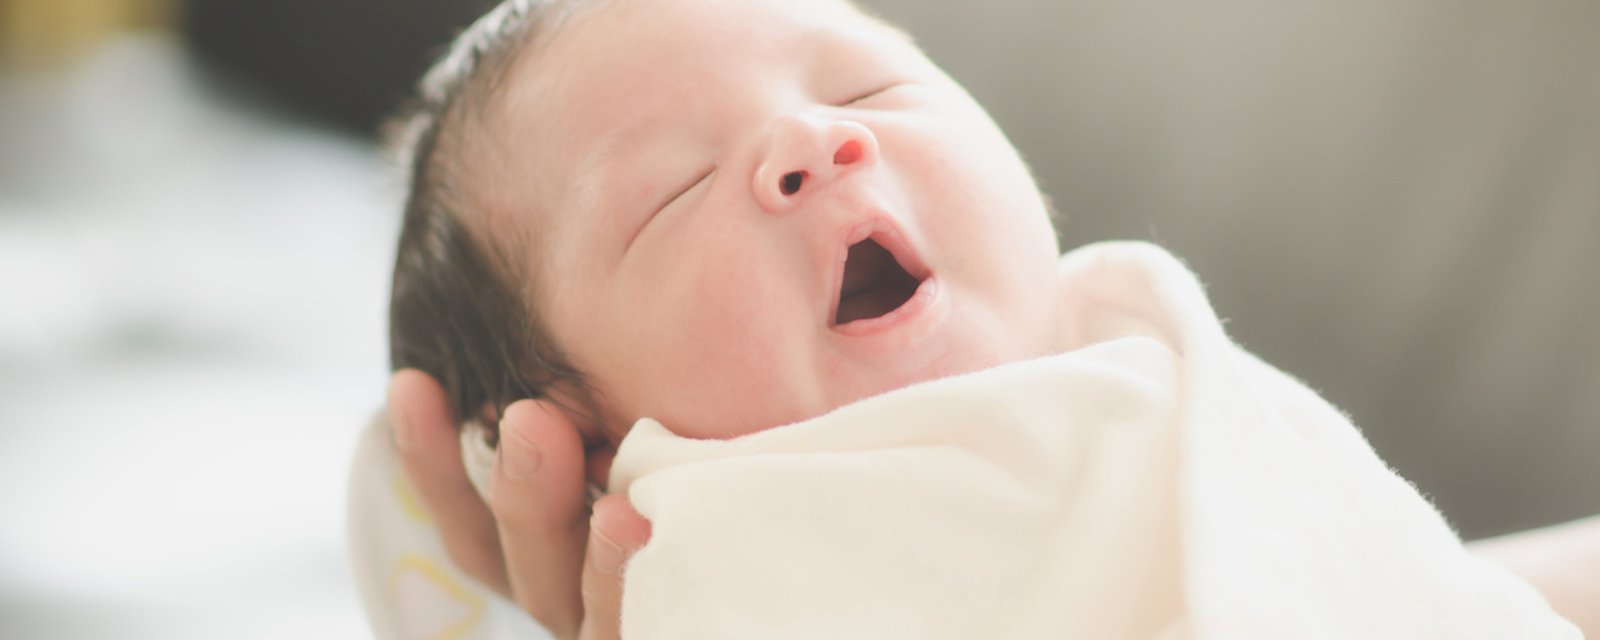 Les 9 règles de base à respecter lorsqu'on rend visite à un bébé naissant